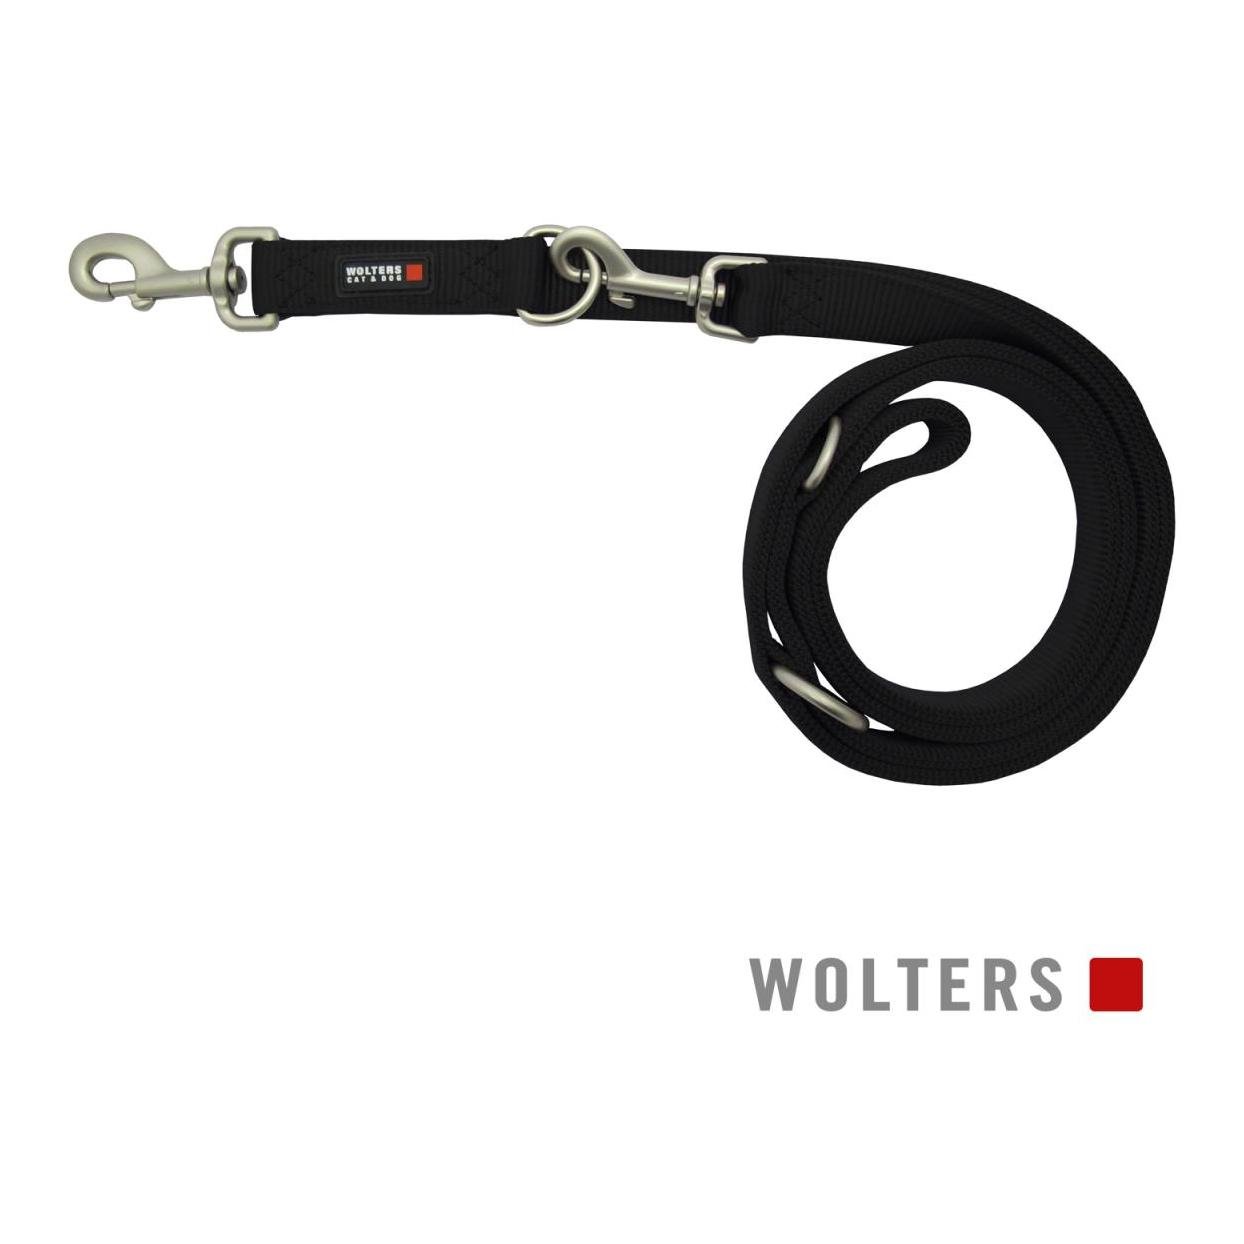 Image of Wolters Führleine verstellbar Professional Classic Nylon 3 m - schwarz bei Hauptner.ch